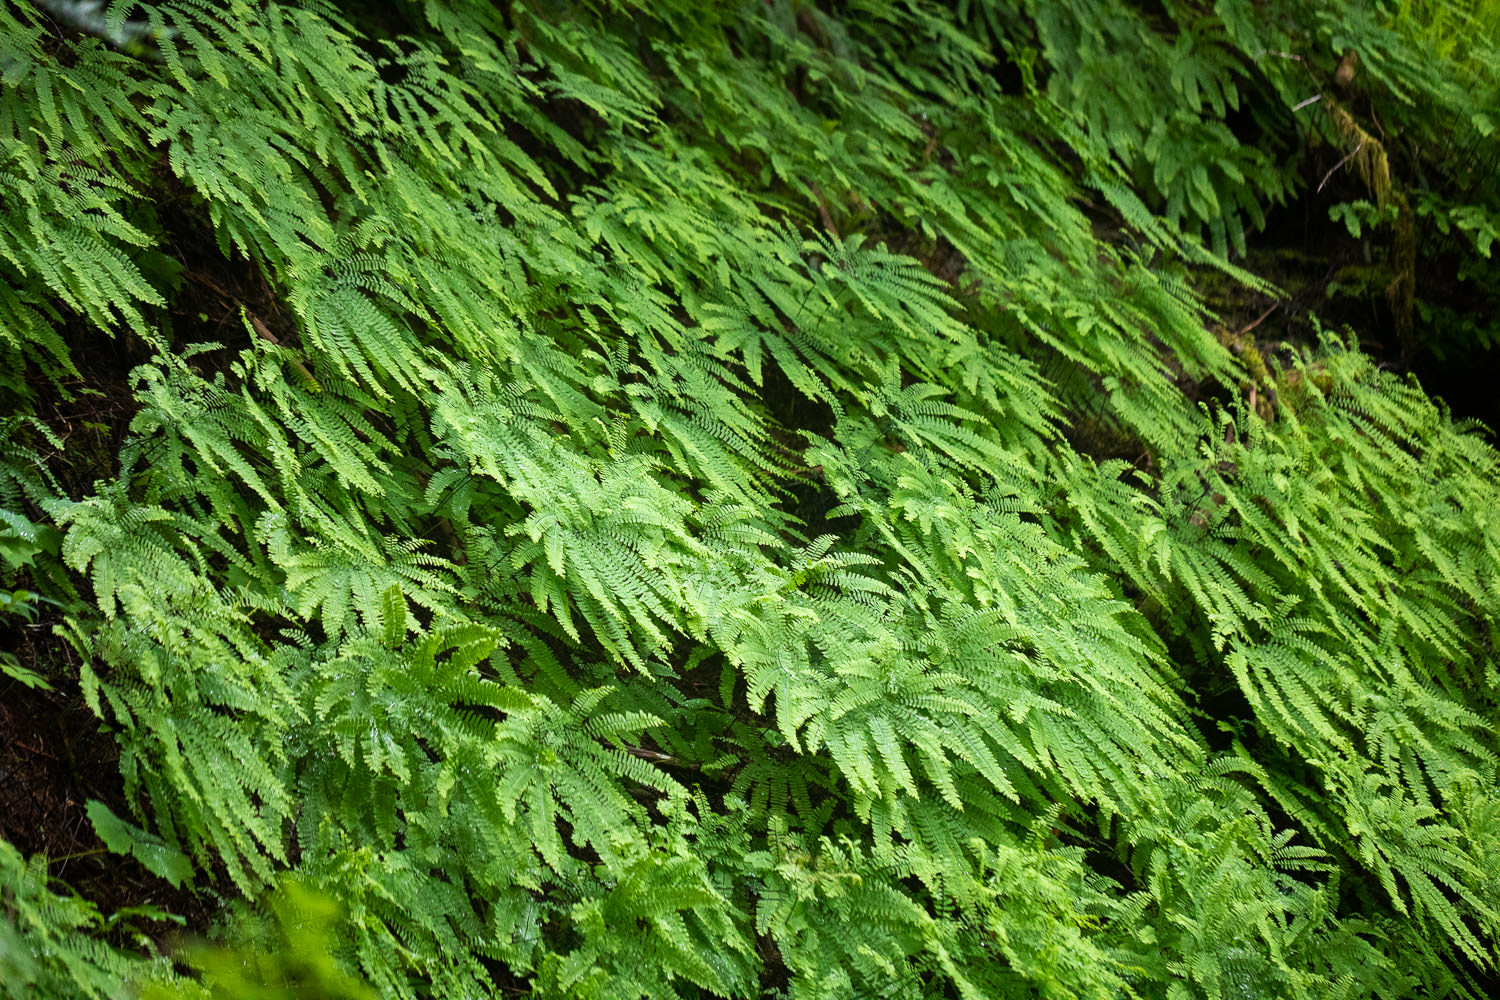 A stunning wall of maidenhair ferns